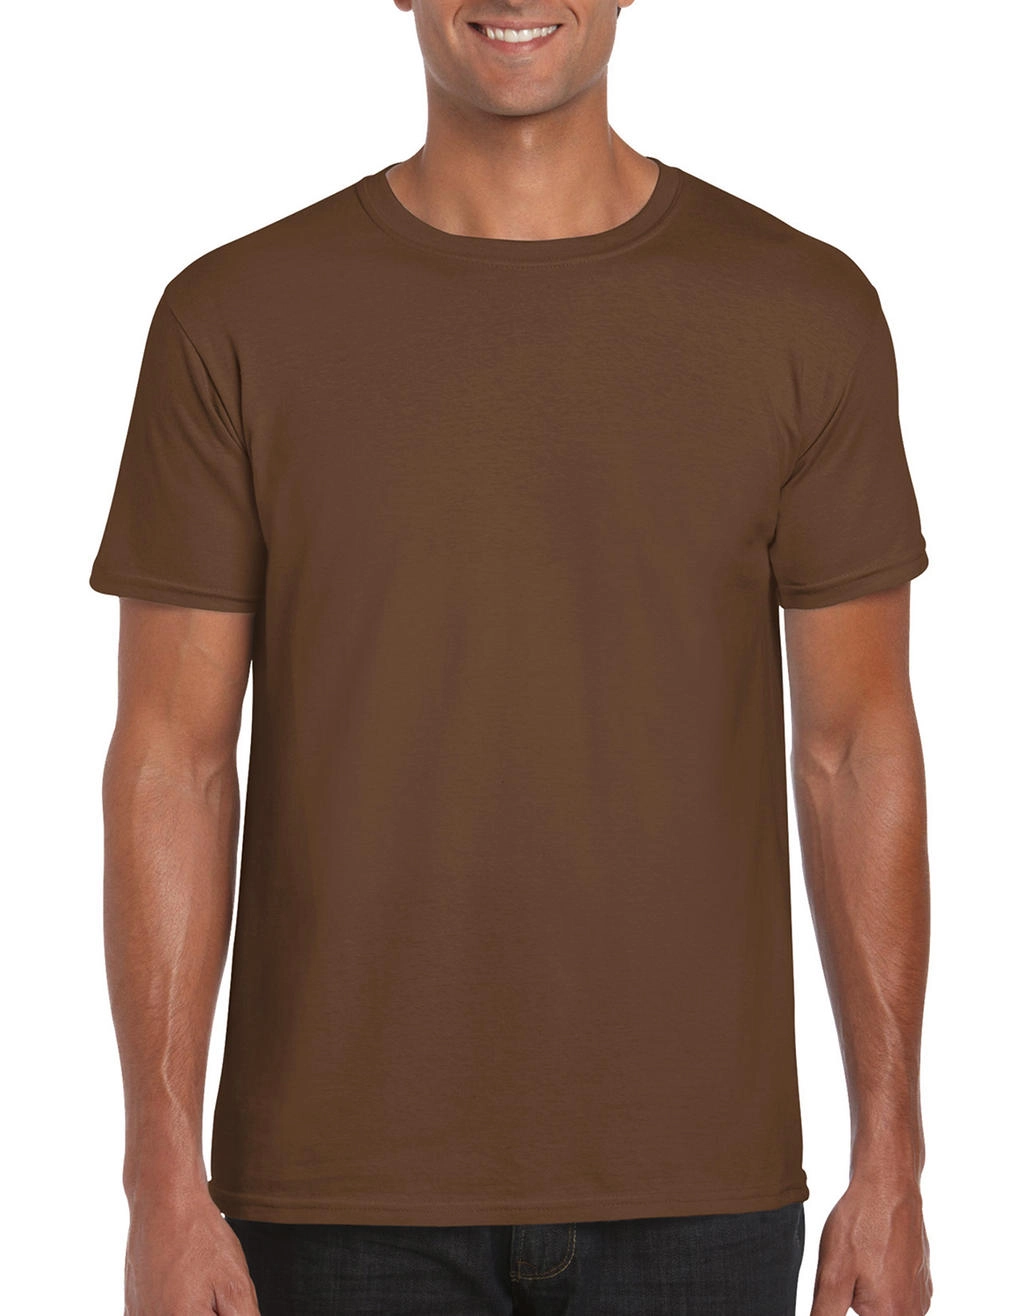 Softstyle® Ring Spun T-Shirt zum Besticken und Bedrucken in der Farbe Chestnut mit Ihren Logo, Schriftzug oder Motiv.